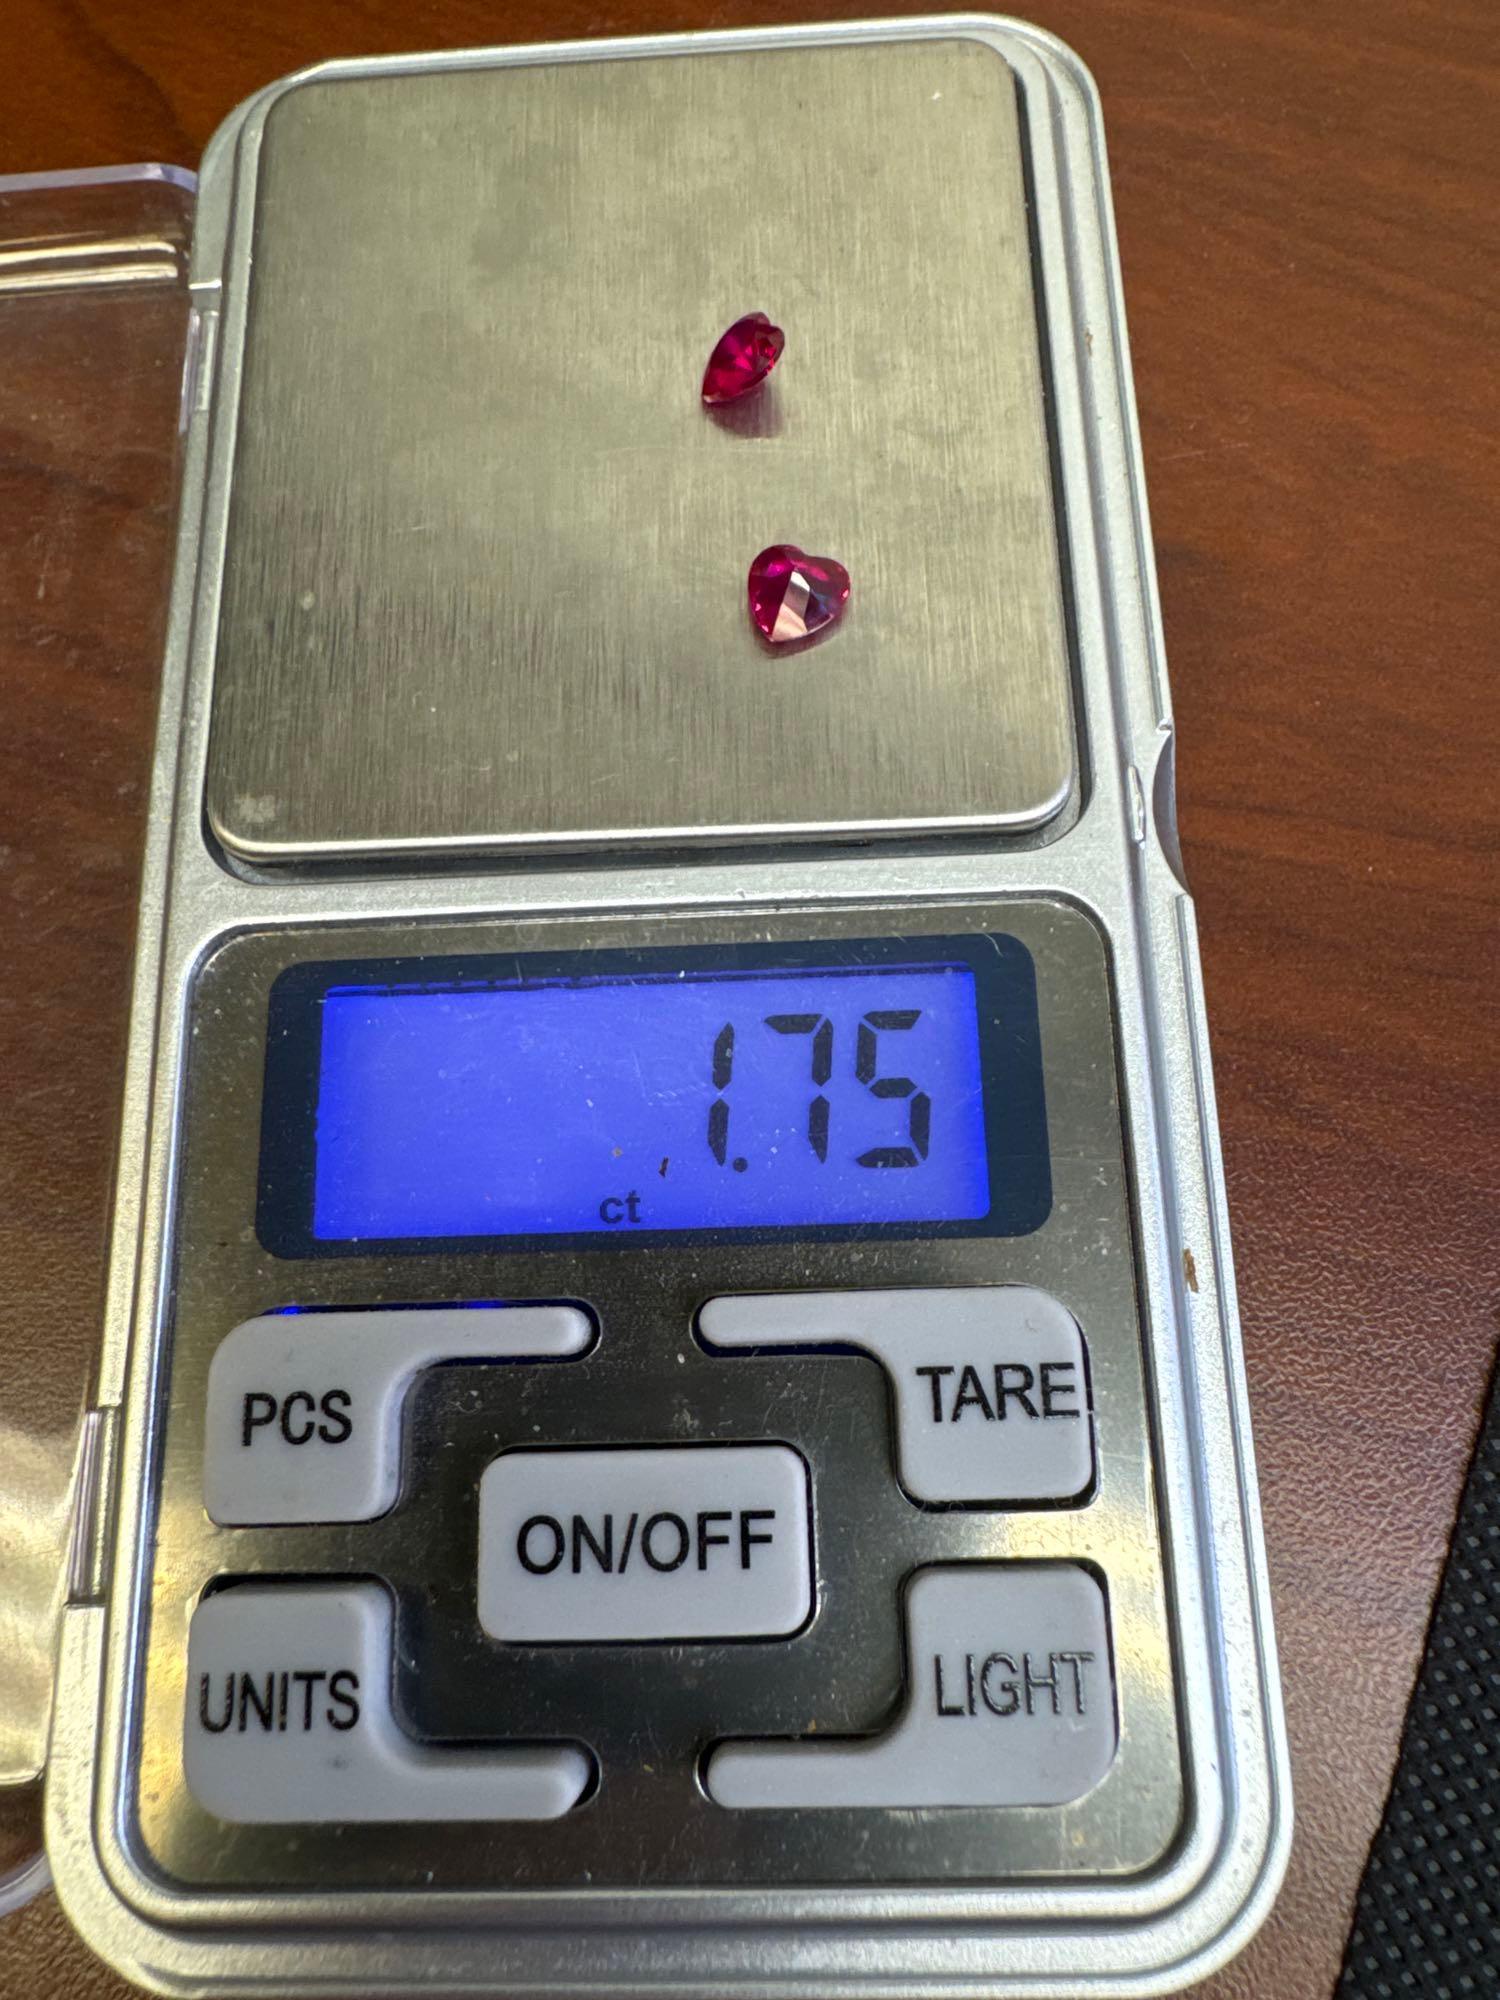 Pair Of Heart Cut Red Ruby Gemstones 1.75 Ct